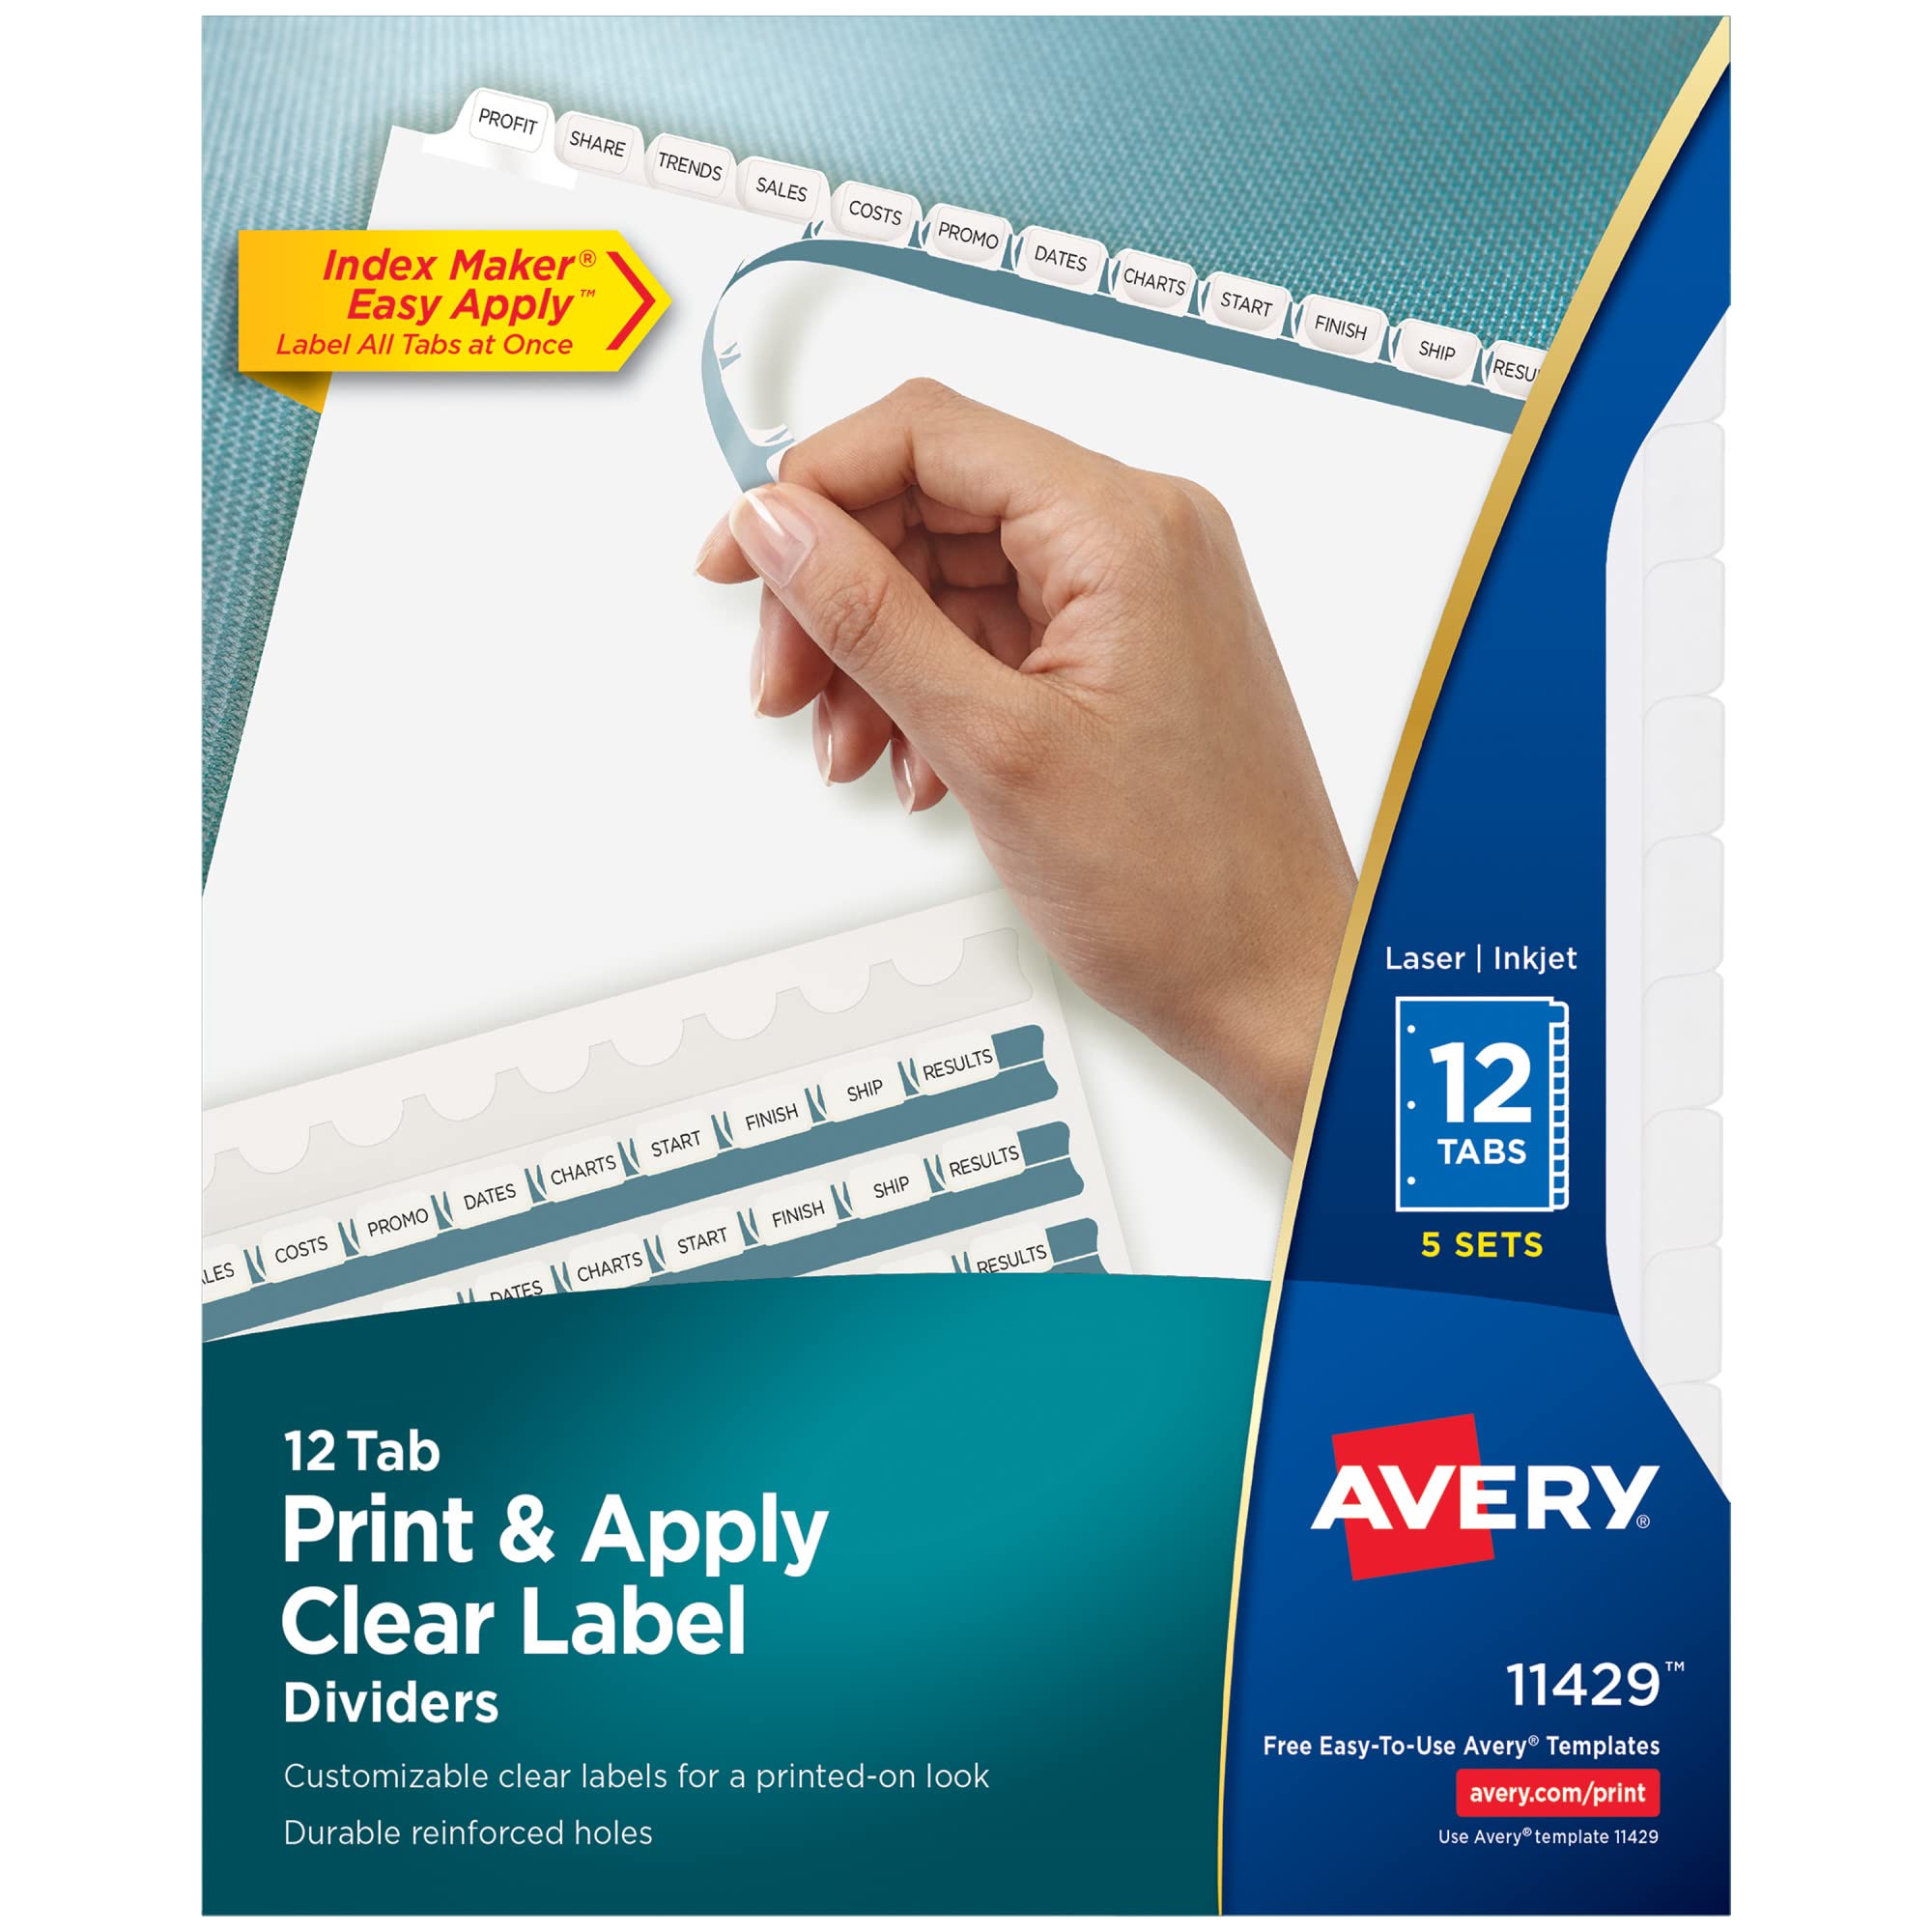 Avery 3 リング バインダー用タブ ディバイダー 12 枚、印刷と貼り付けが簡単な透明ラベル ストリップ...